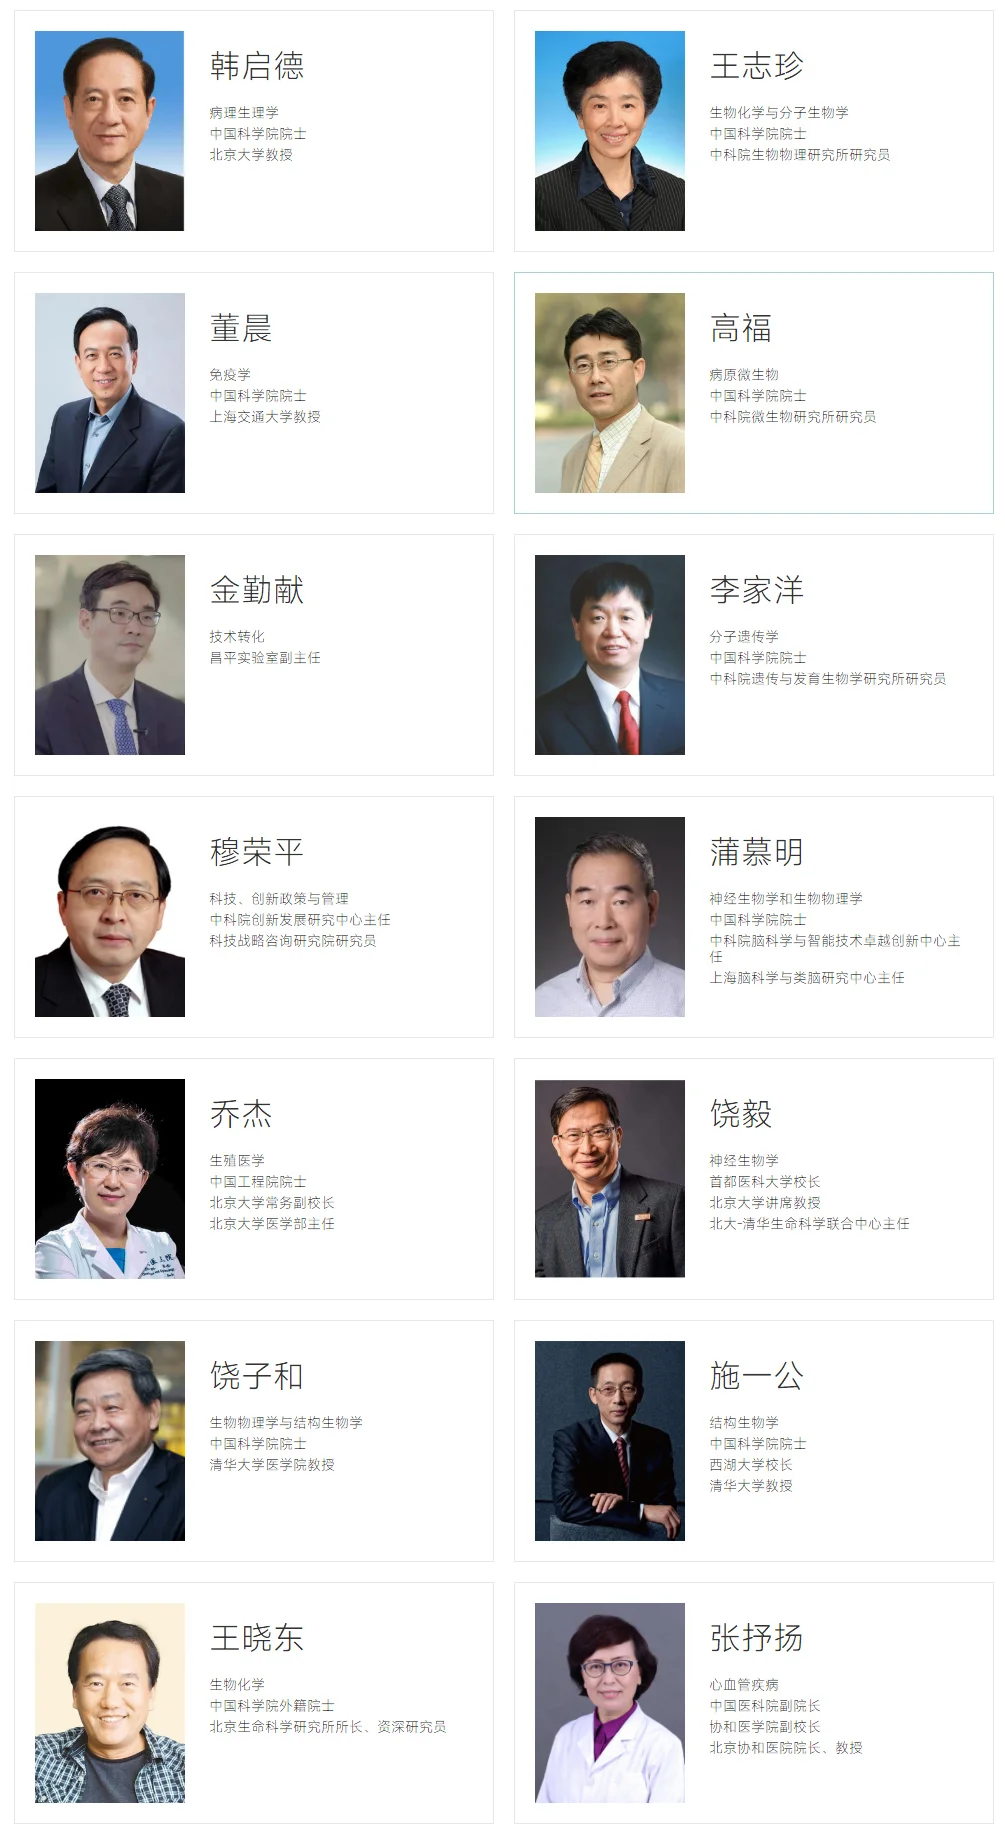 新晋院士颜宁领衔的深圳医学科学院，战略委员会还有10余名两院院士加持